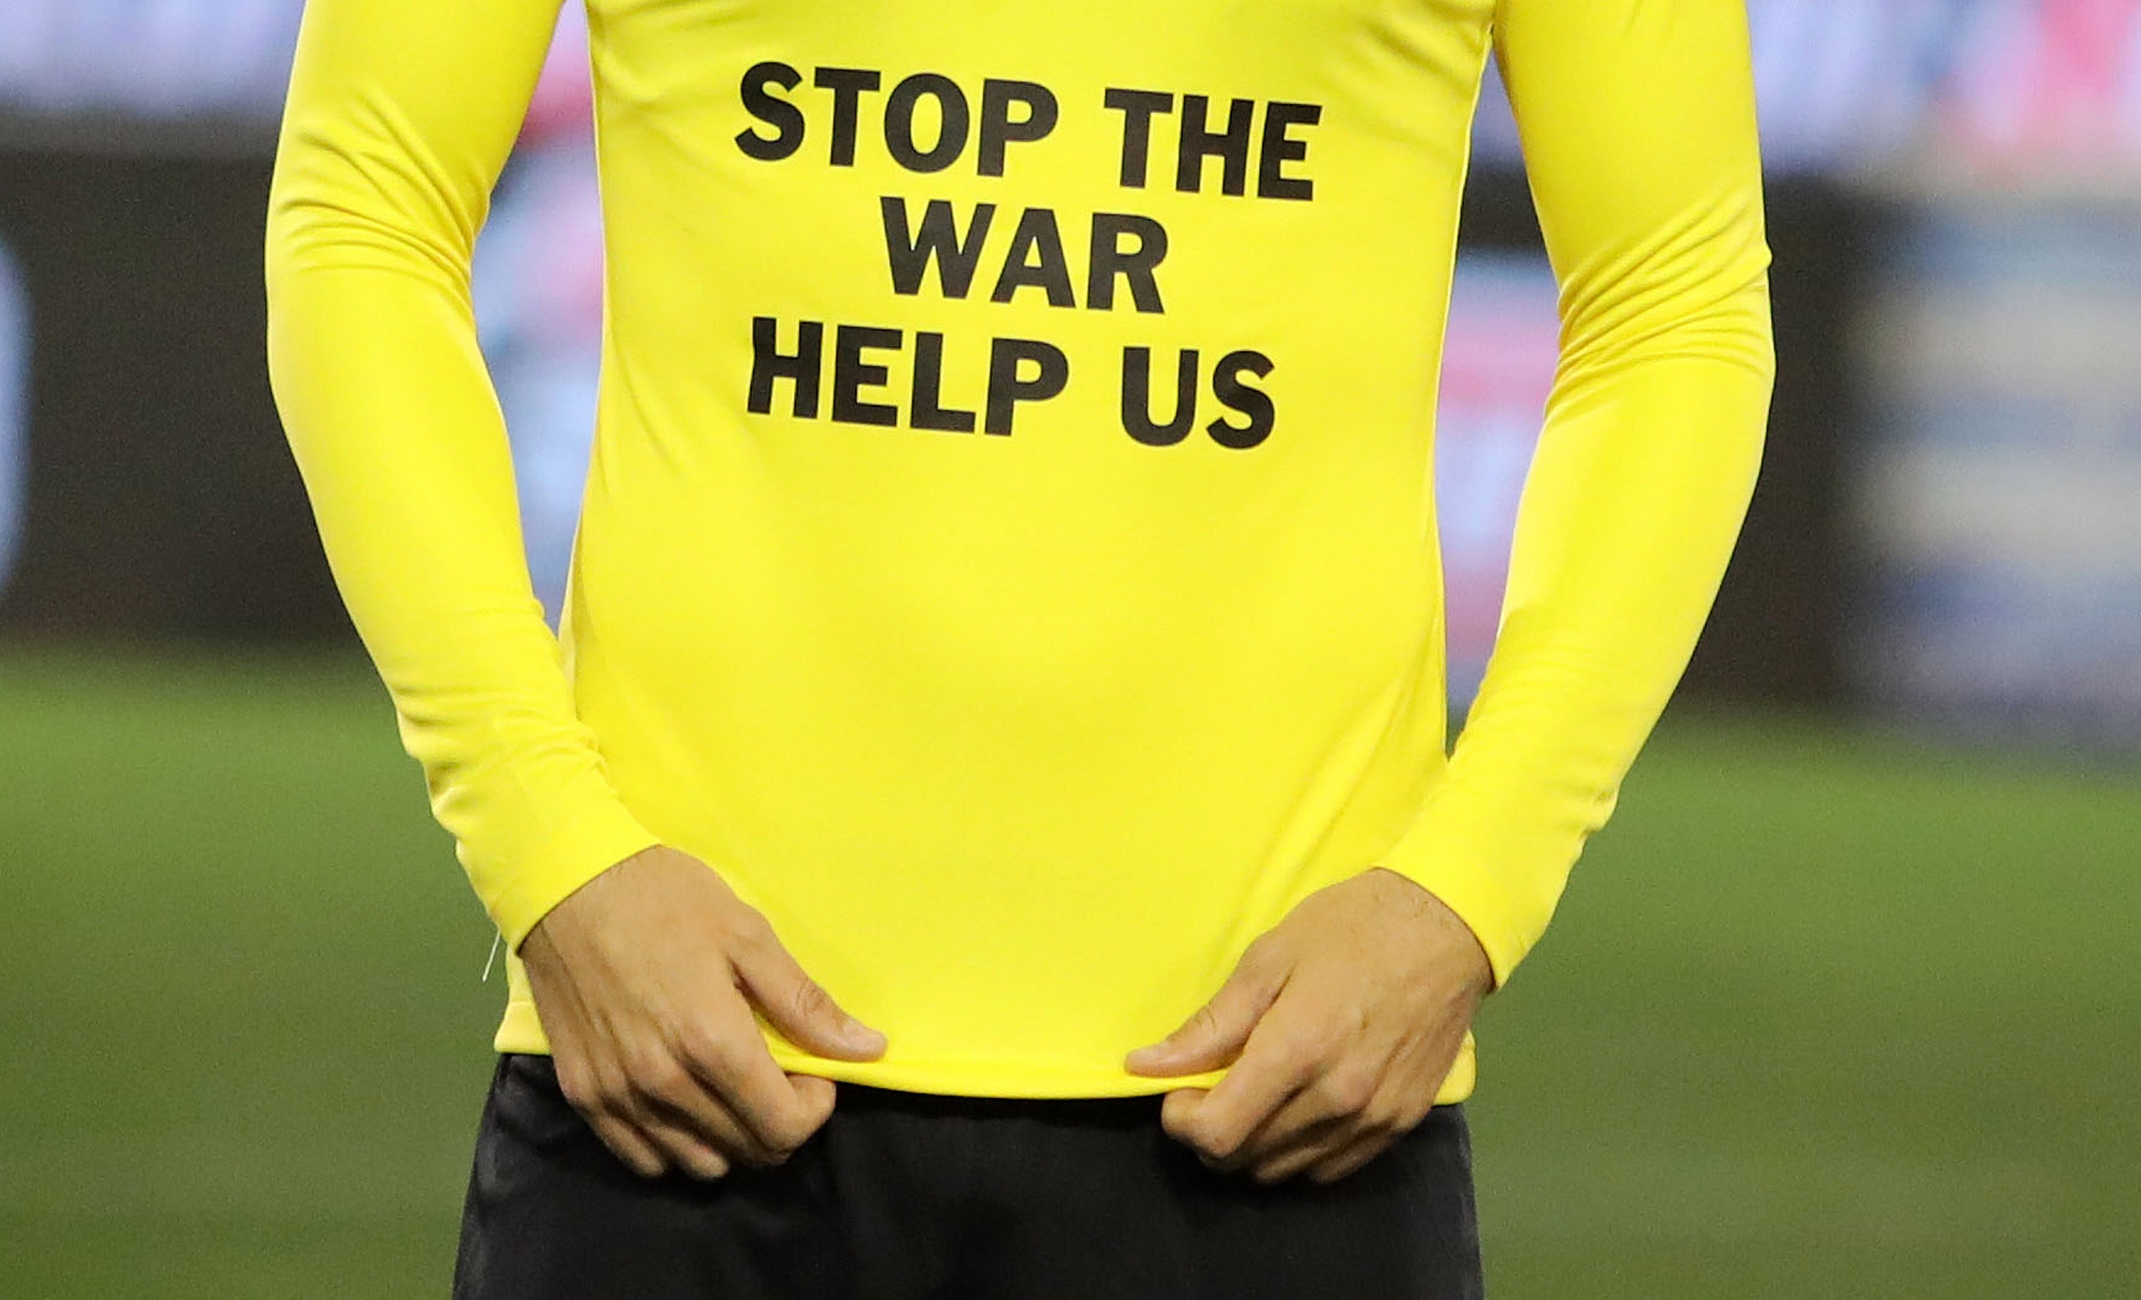 Εισβολή στην Ουκρανία: Τούρκος ποδοσφαιριστής αρνήθηκε να φορέσει μπλούζα με μήνυμα «όχι στον πόλεμο»